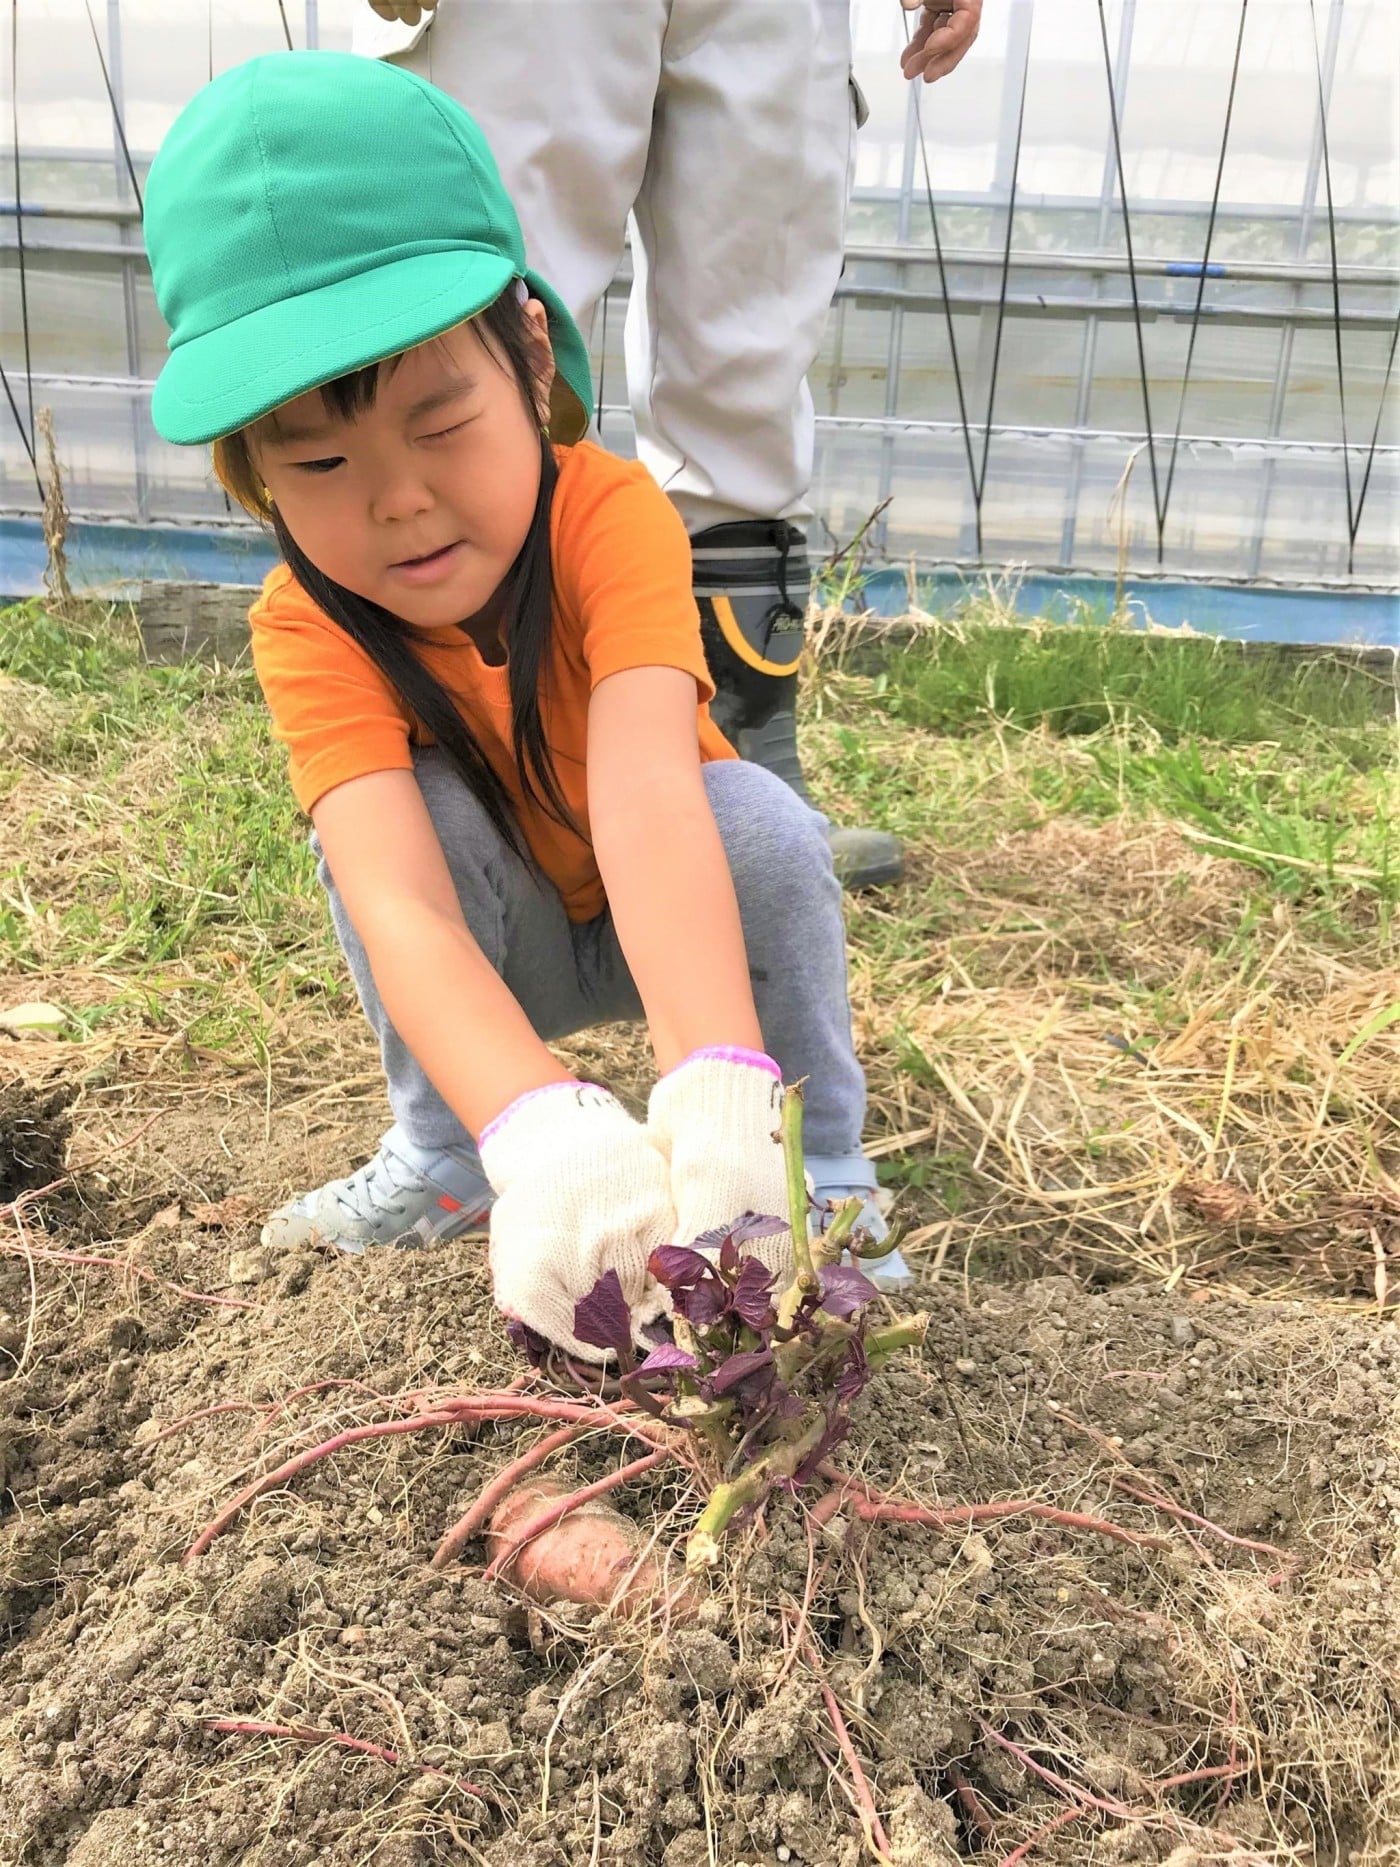 名古屋市緑区のプリスクール「SukuSuku English Preschool 浦里」では、提携している農園で自然と触れ合えます